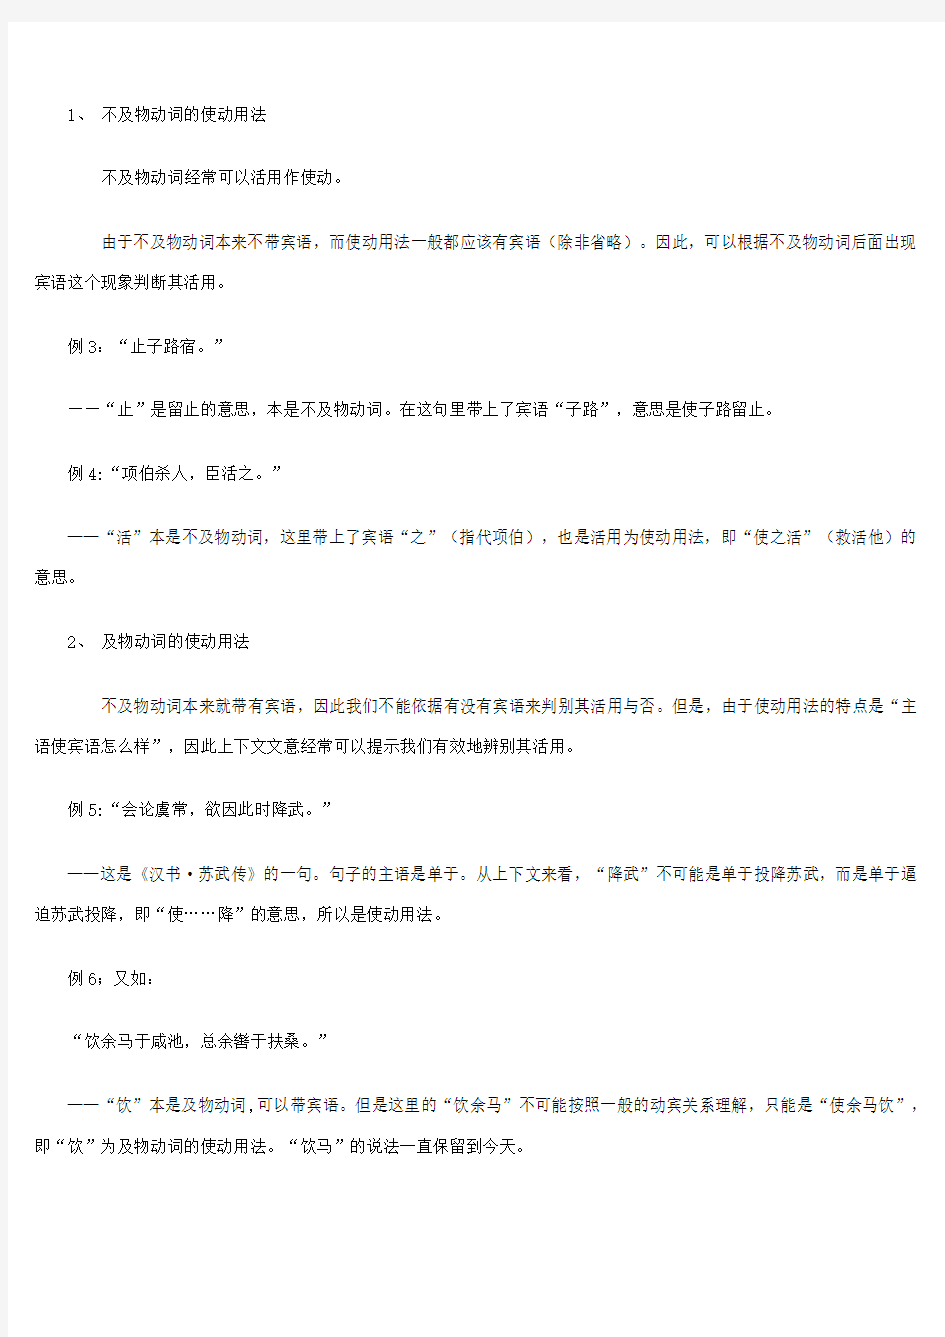 古汉语--使动用法举例分析